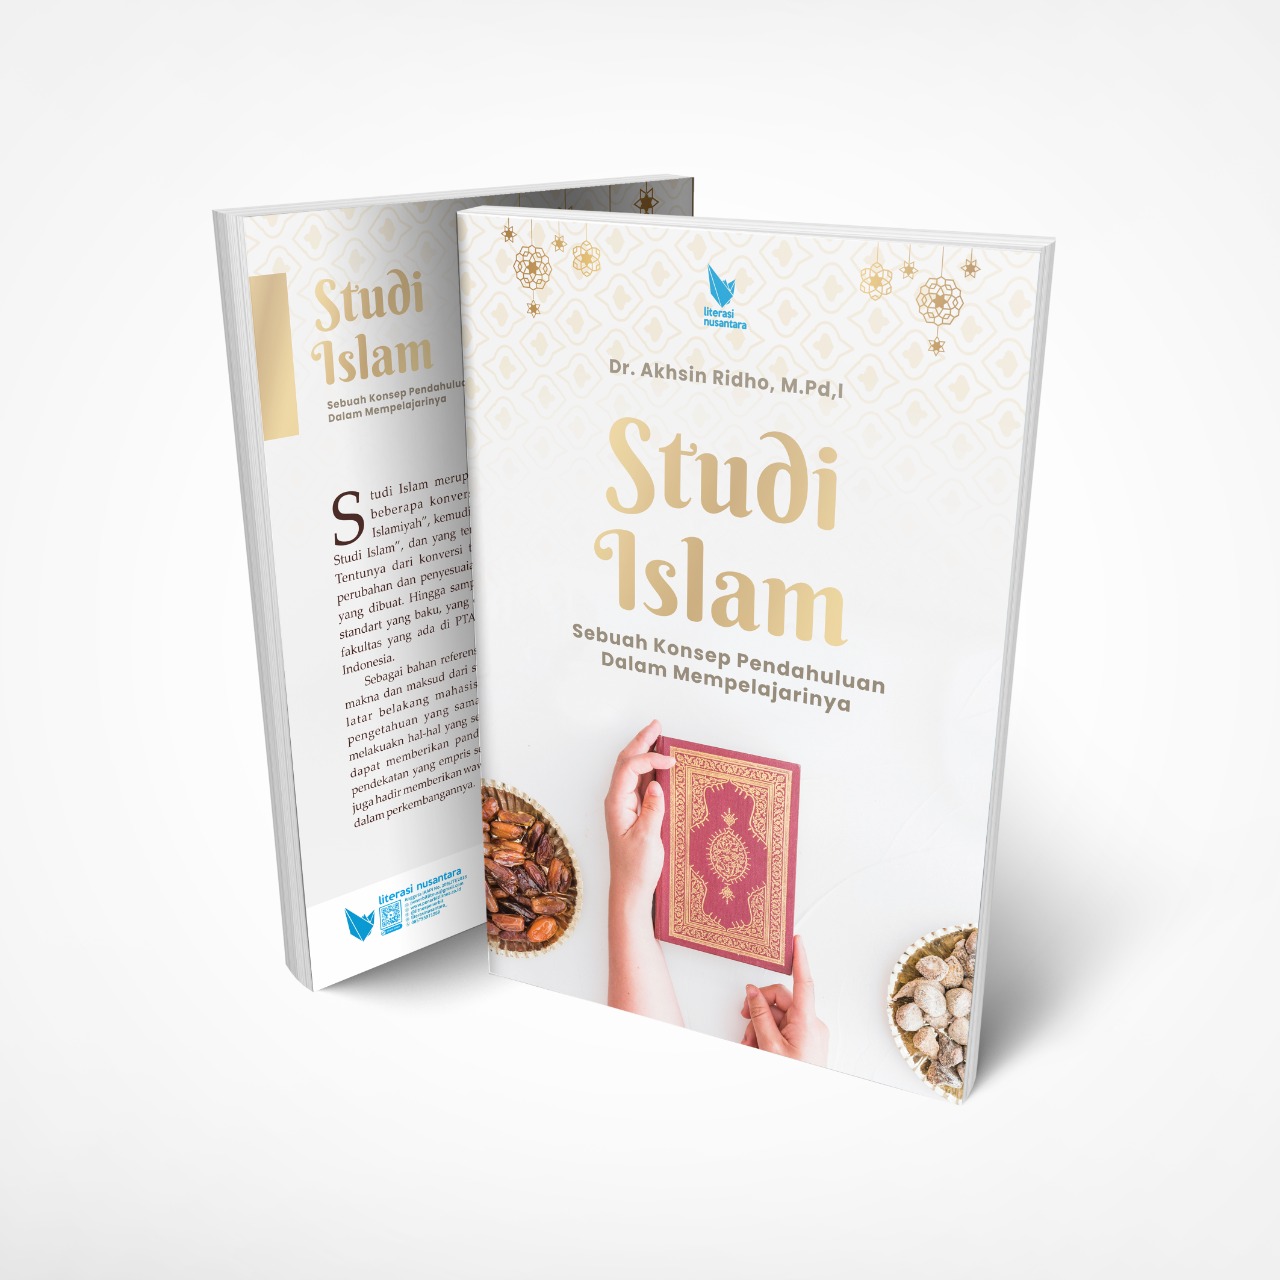 Studi Islam